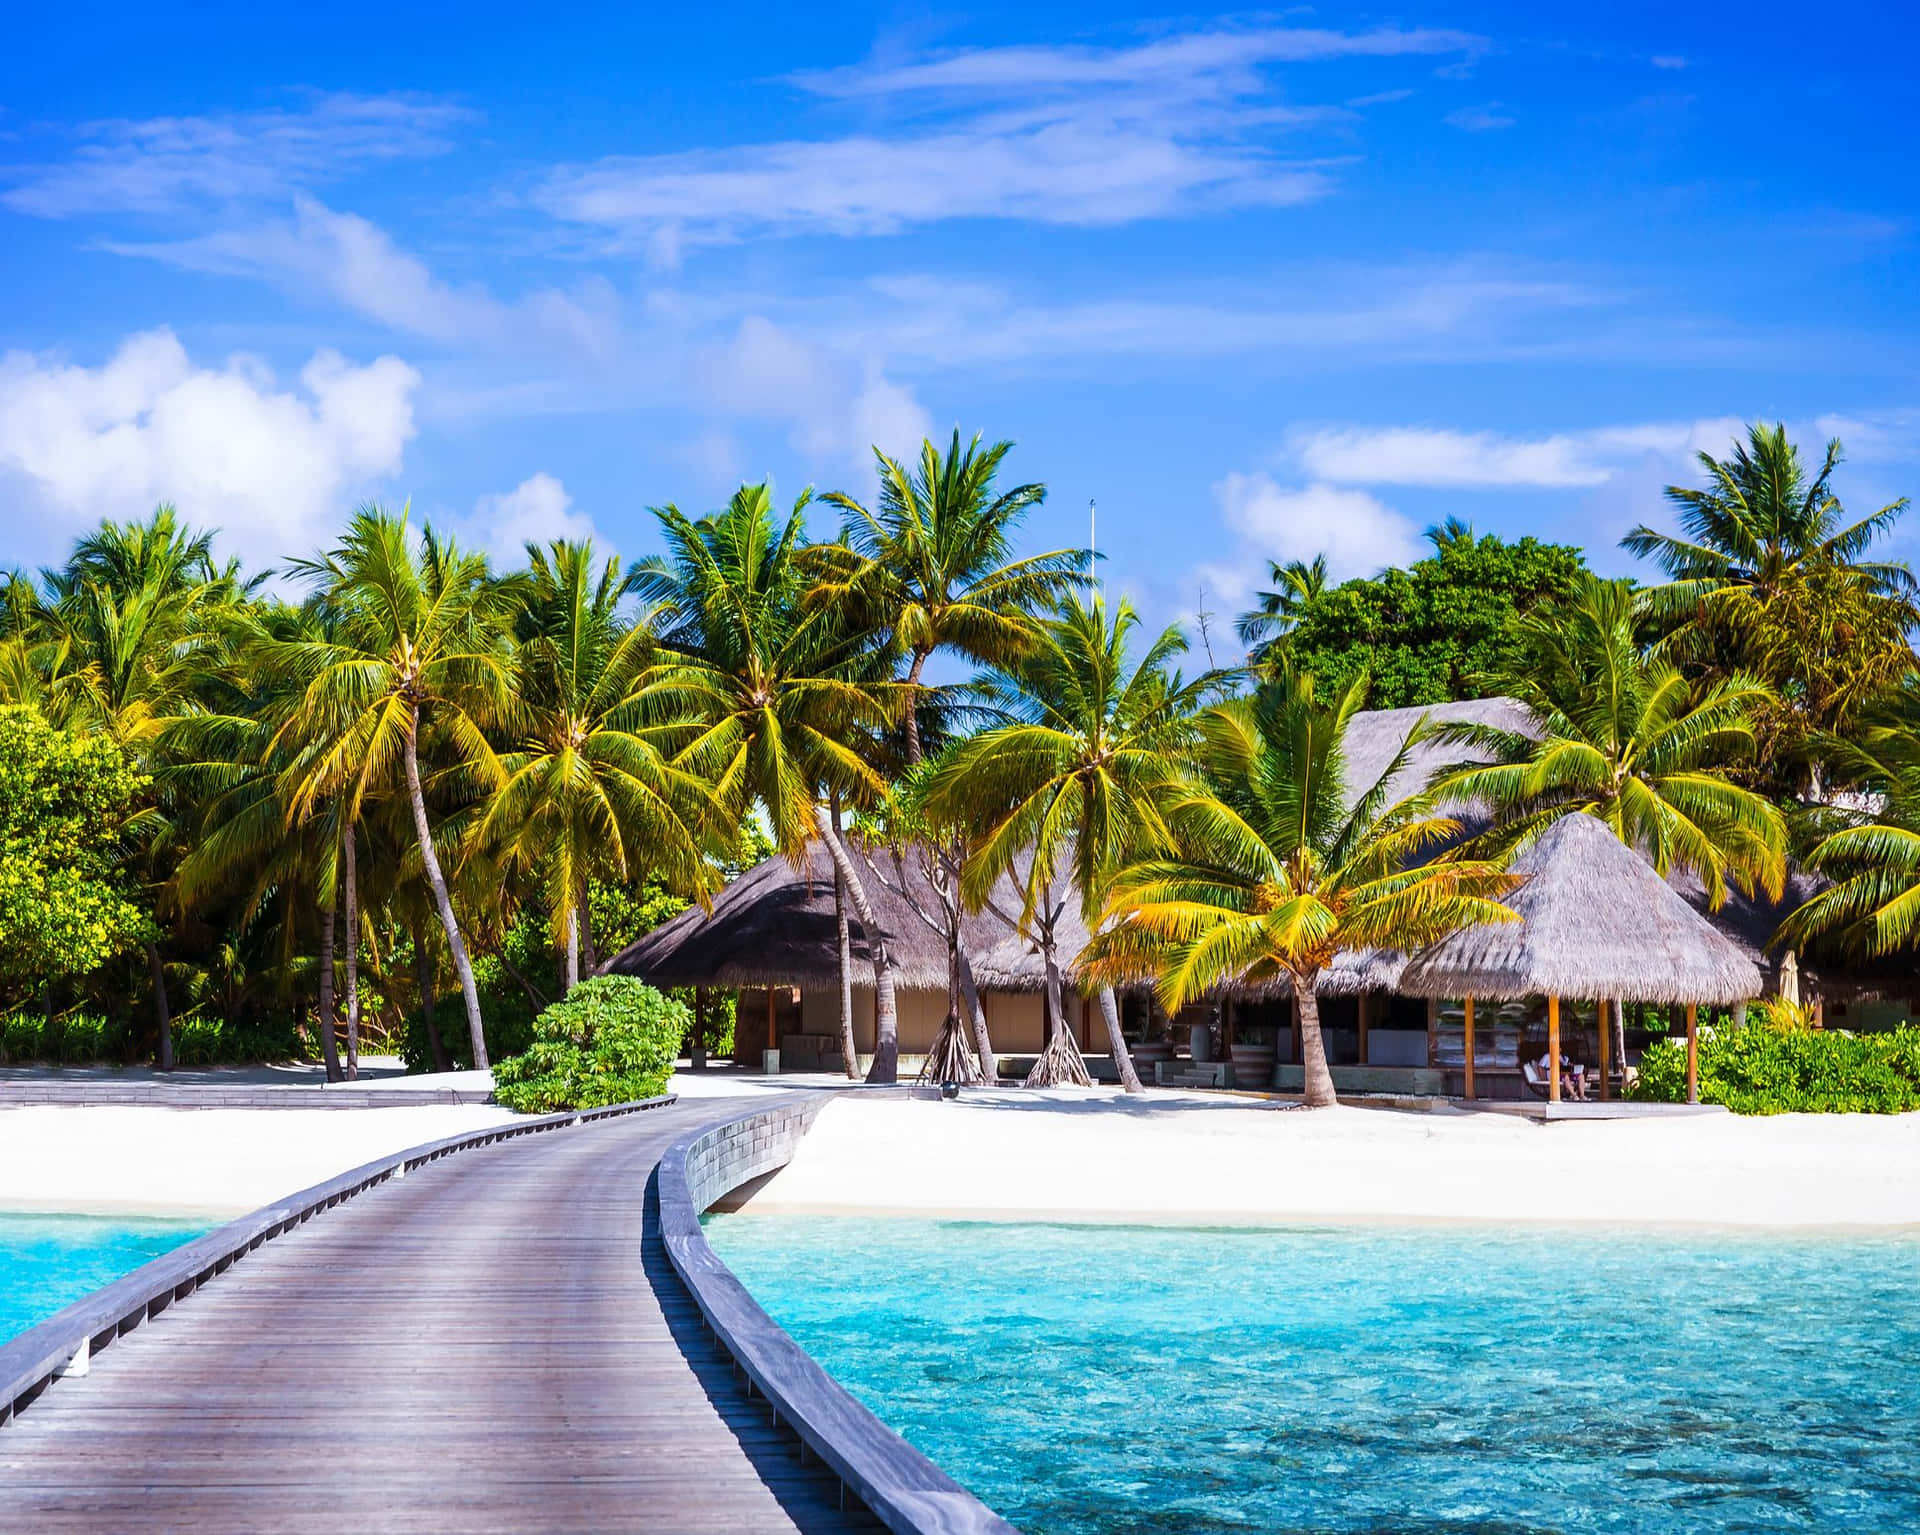 Schönesbild Vom Strand Auf Den Malediven.